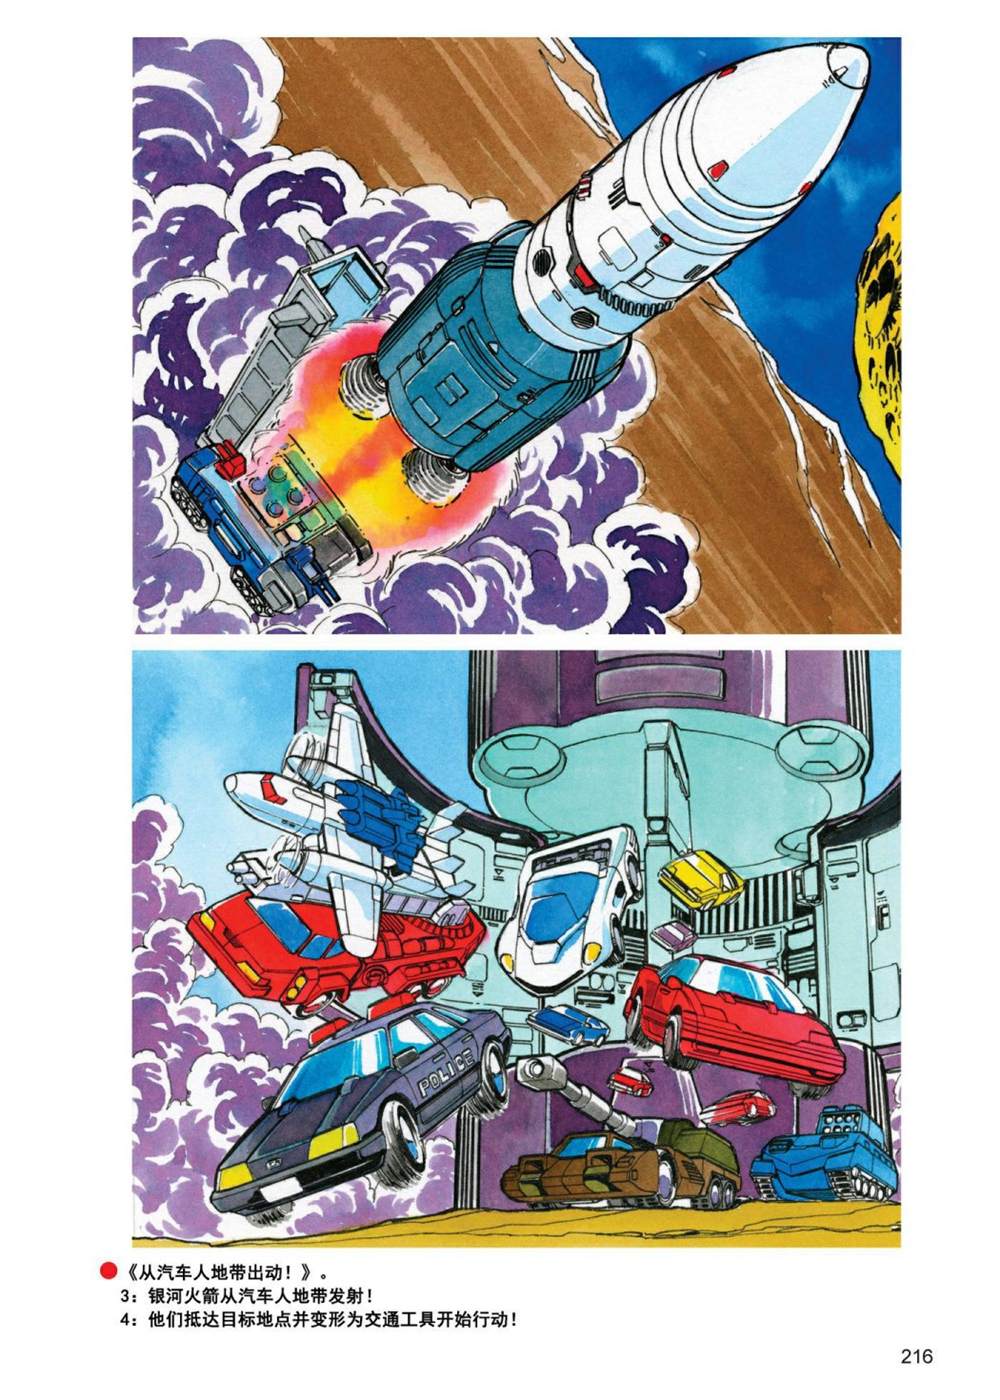 變形金剛日版G1雜誌插畫 - 《戰鬥吧！超機械生命體變形金剛：地帶》 - 4